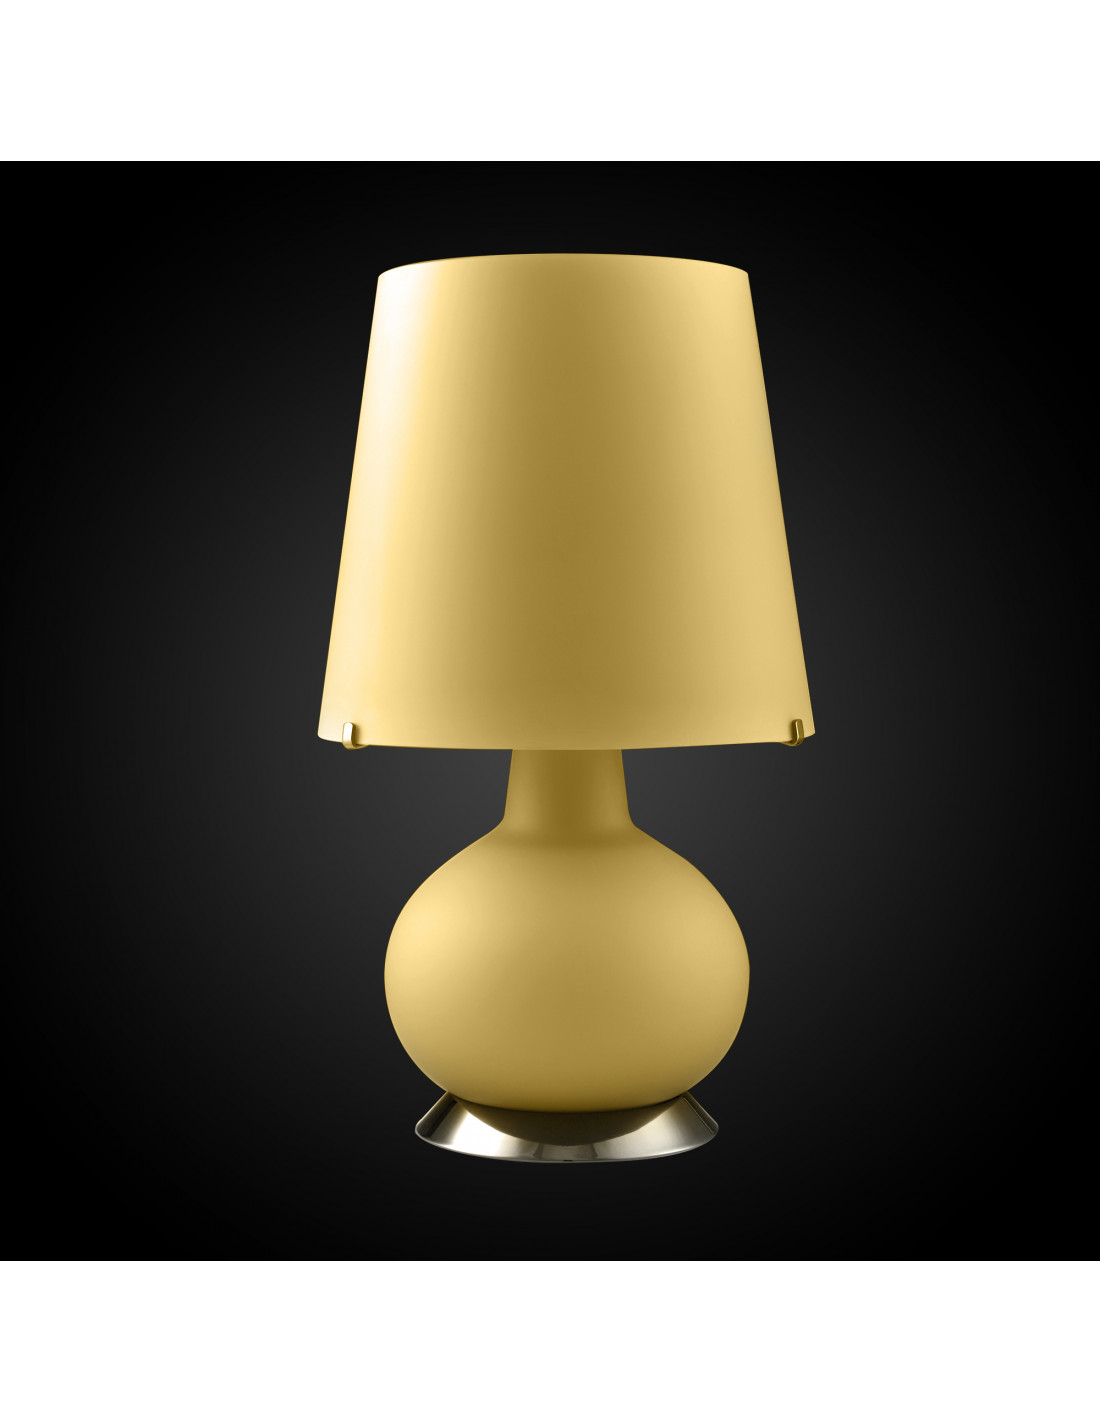 Design table lamp in Murano glass - Albus - Modern Contemporary Design